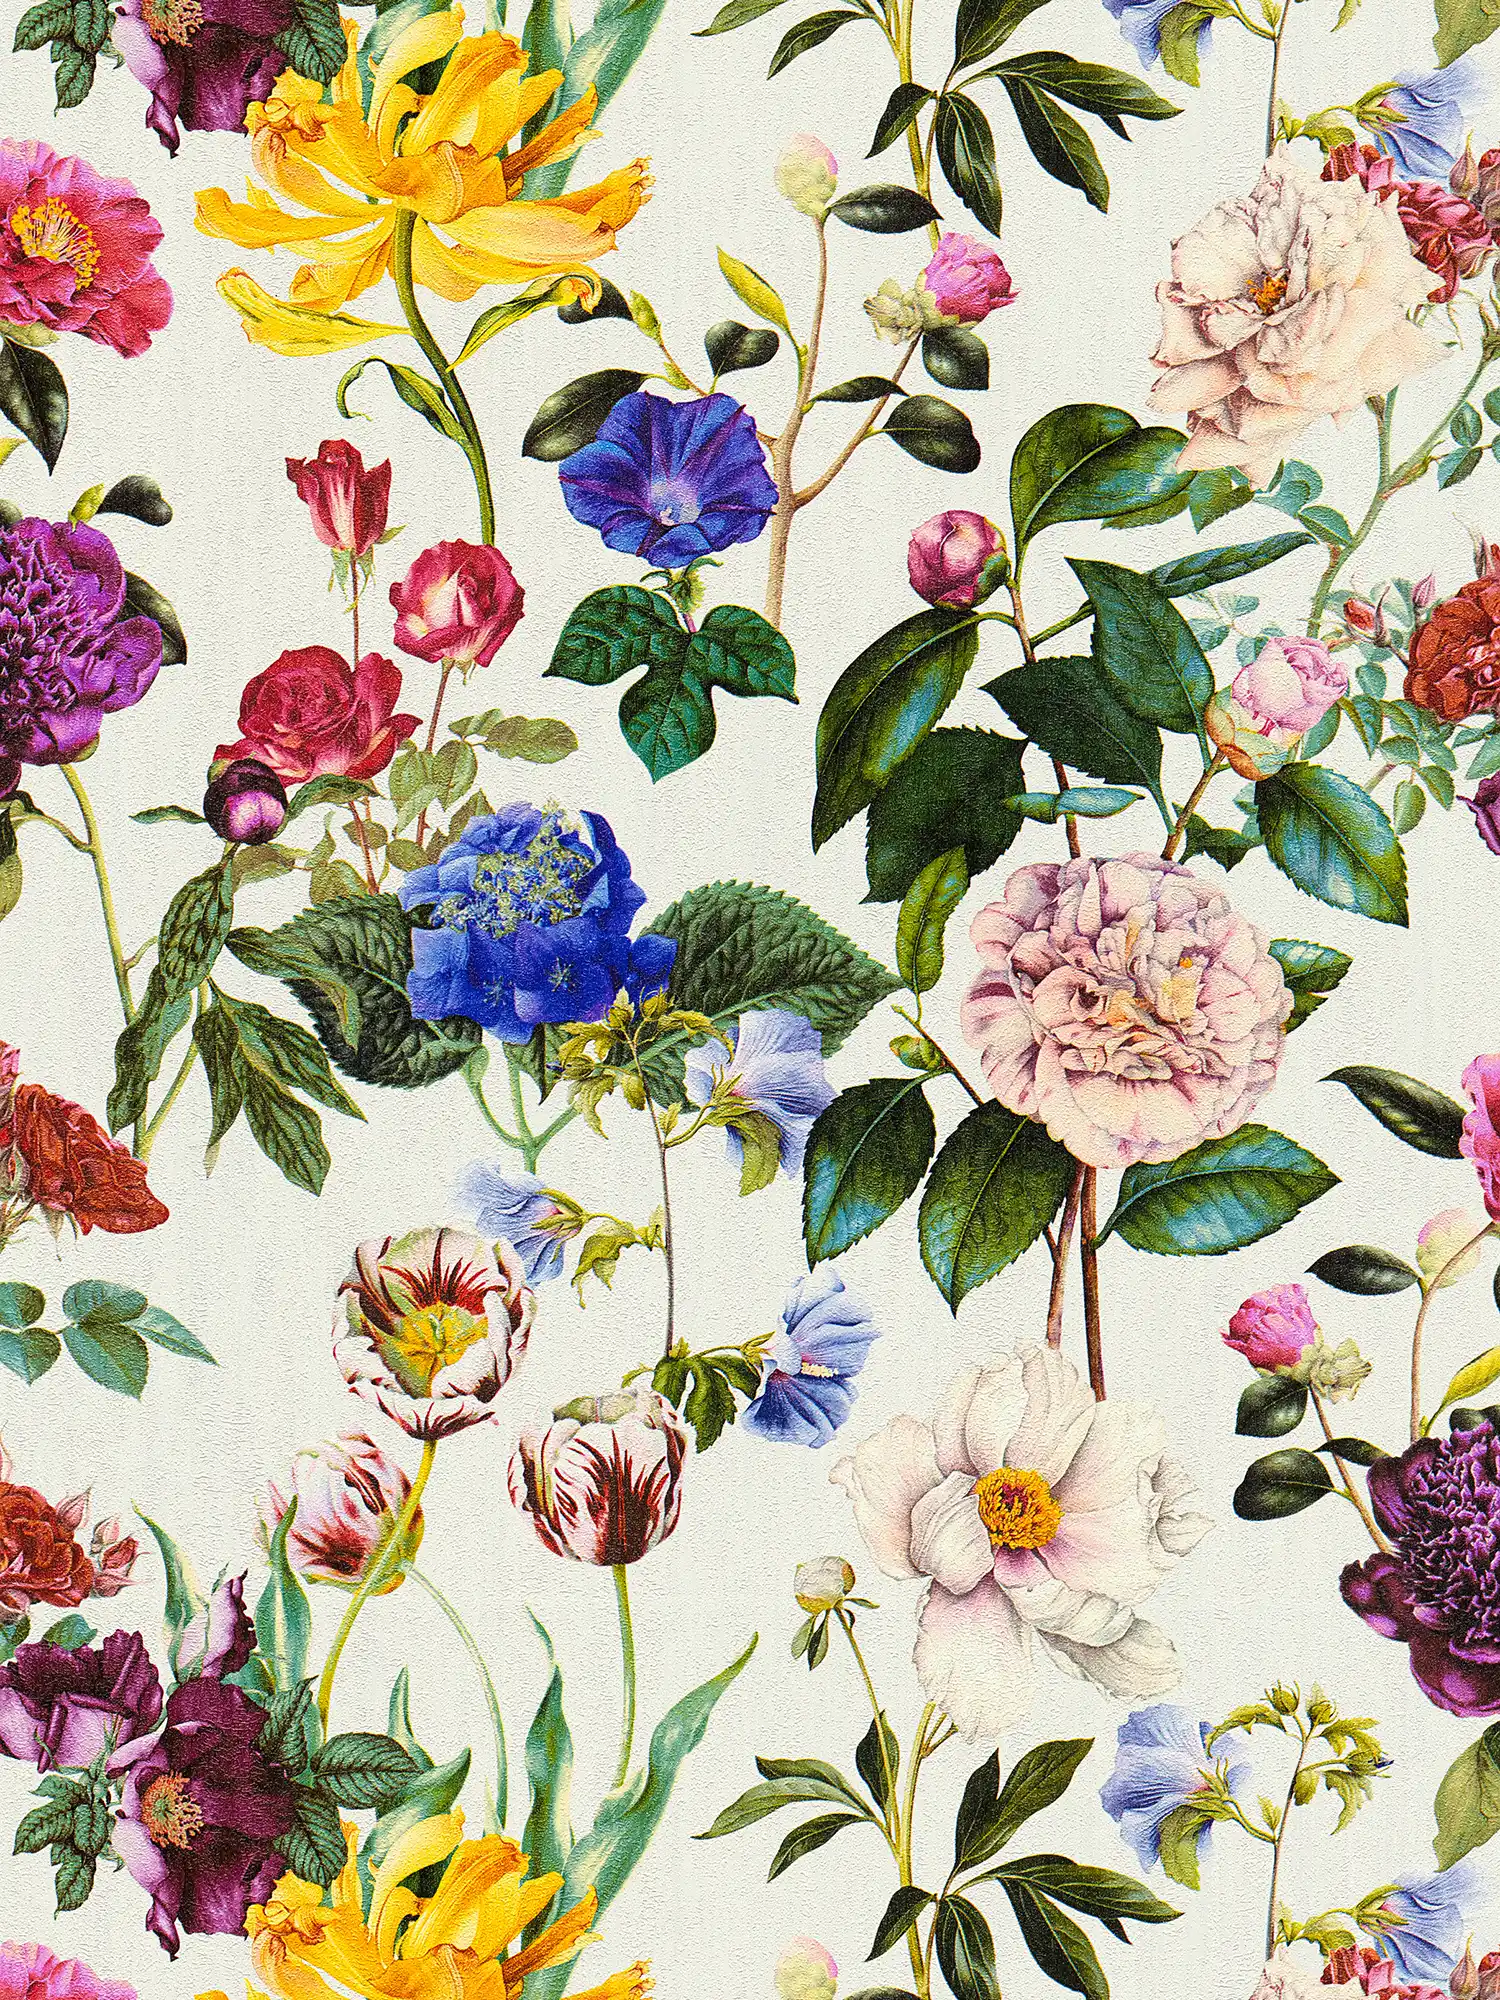 Papier peint fleuri avec des fleurs aux couleurs vives - multicolore, vert, gris
